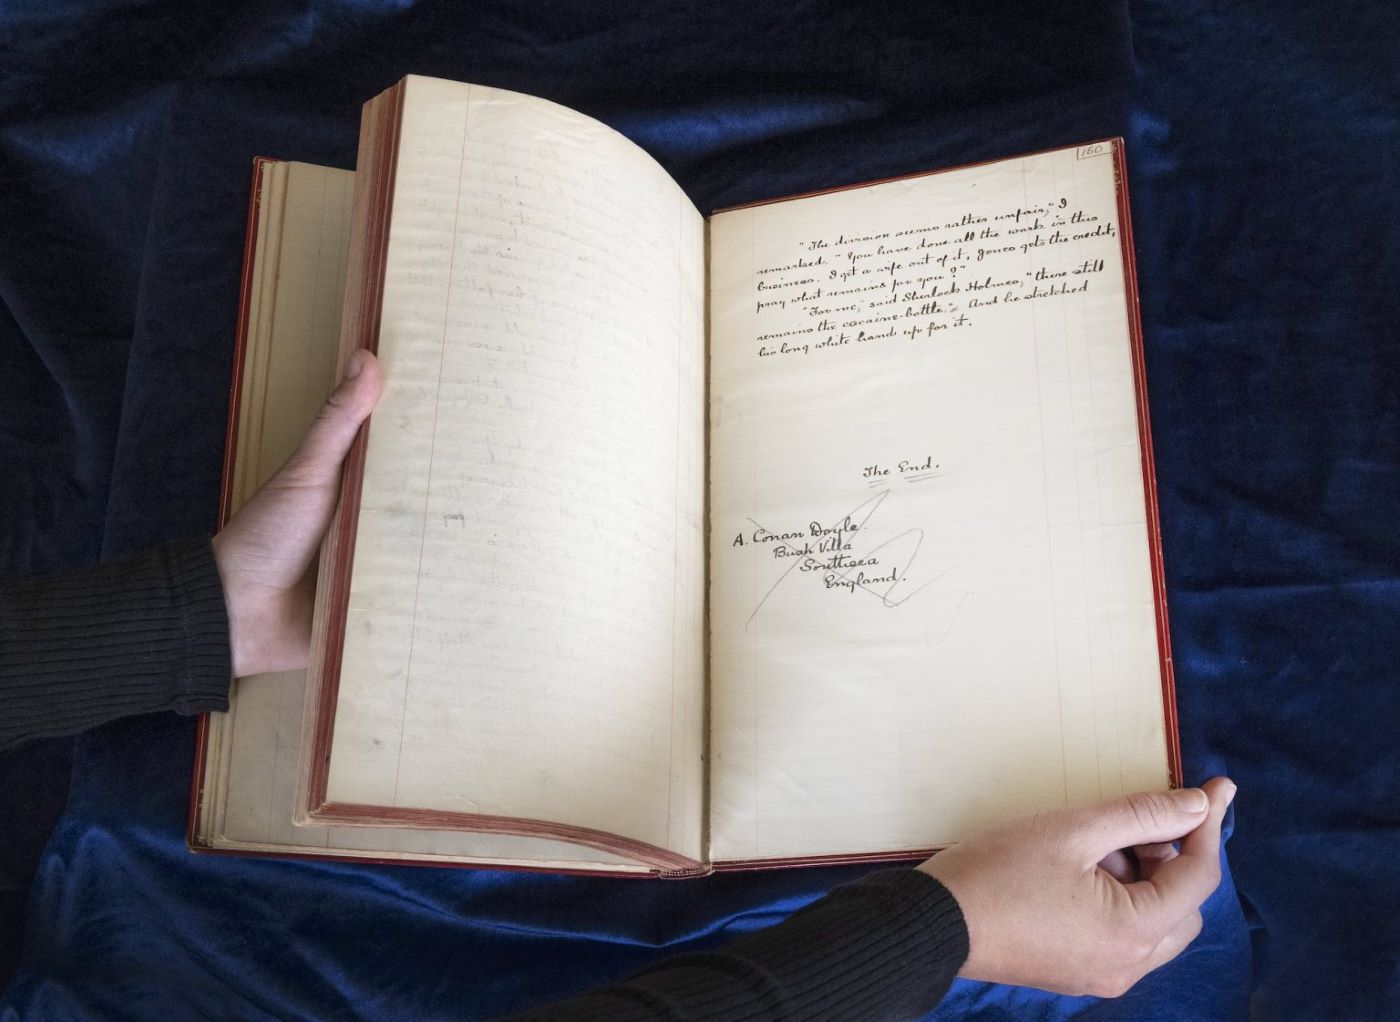 Η υπογραφή του Άρθουρ Κόναν Ντόιλ στο τέλος του βιβλίου «Το Σημάδι των Τεσσάρων»